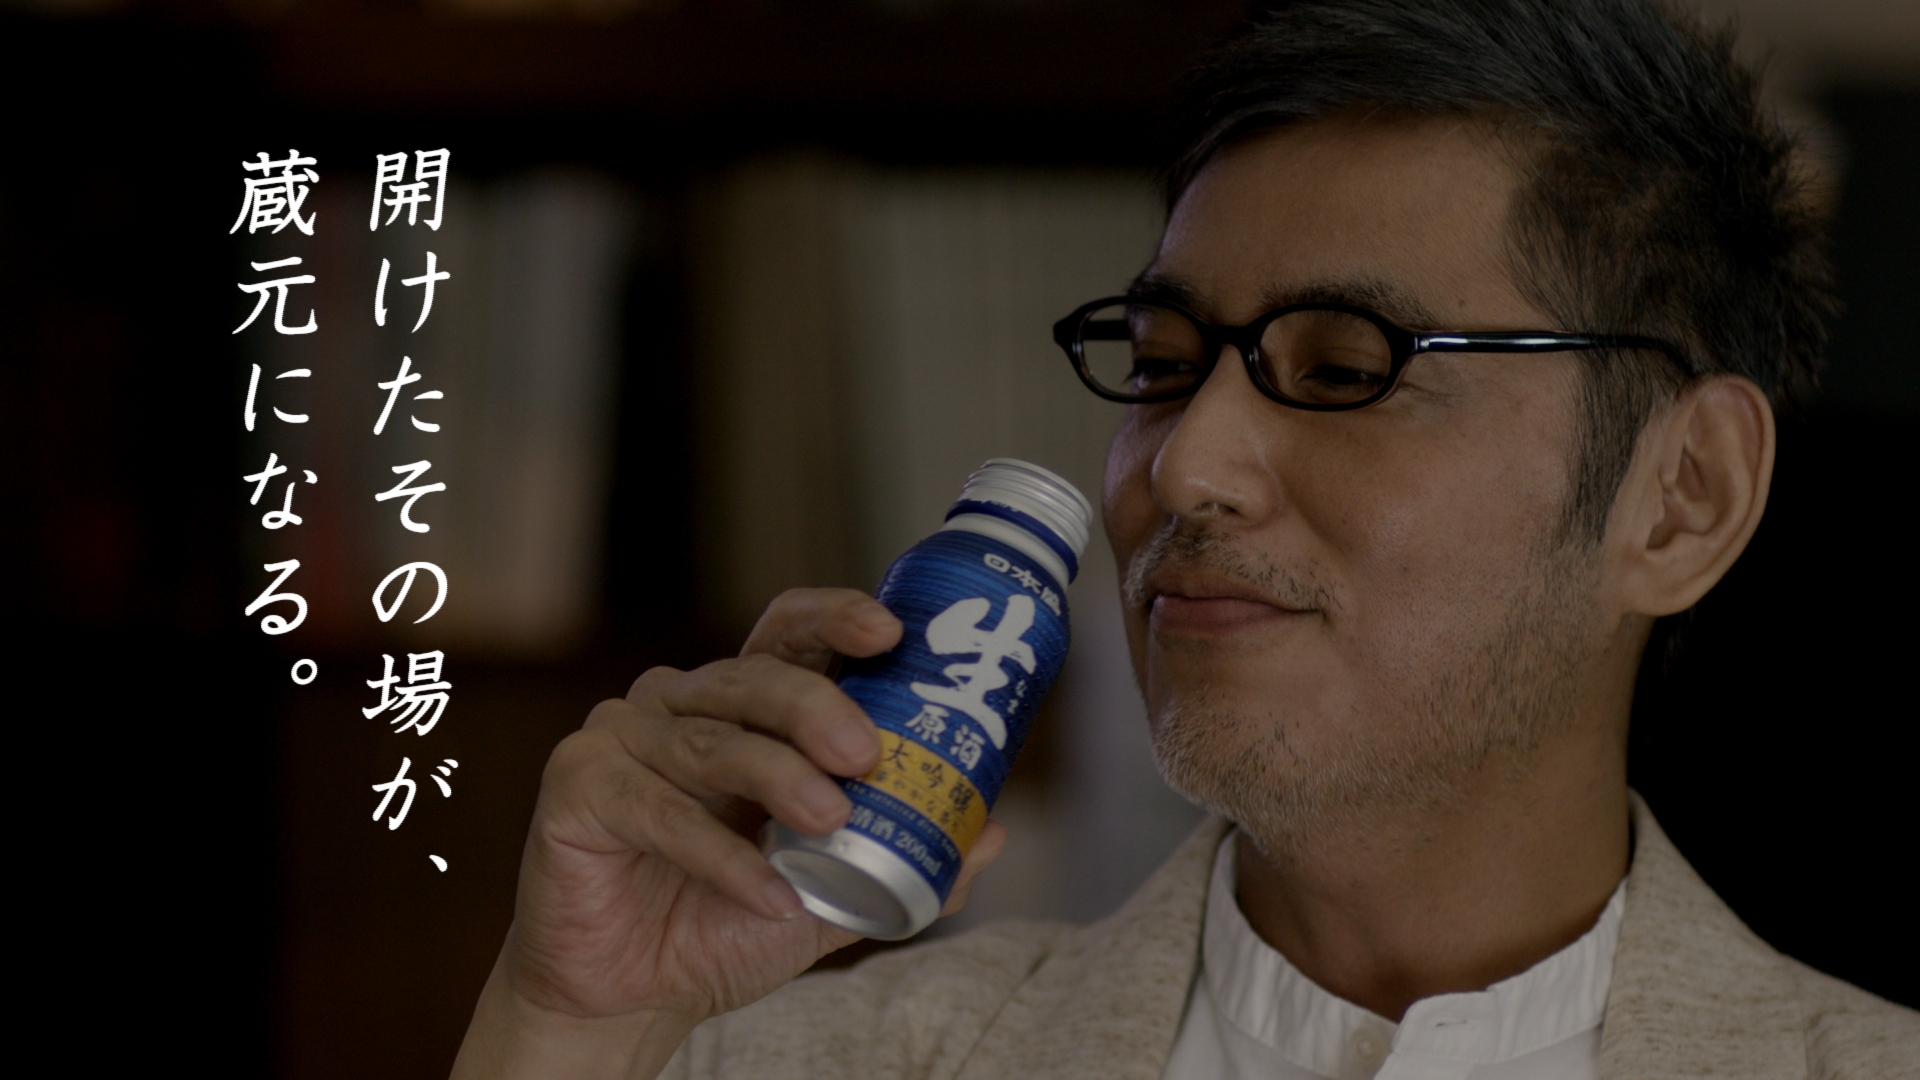 本格的な日本酒が、いつでも手軽に楽しめる 日本盛生原酒ボトル缶 新TV-CM「開けたその場が、蔵元になる。」放送開始！ - 記事詳細